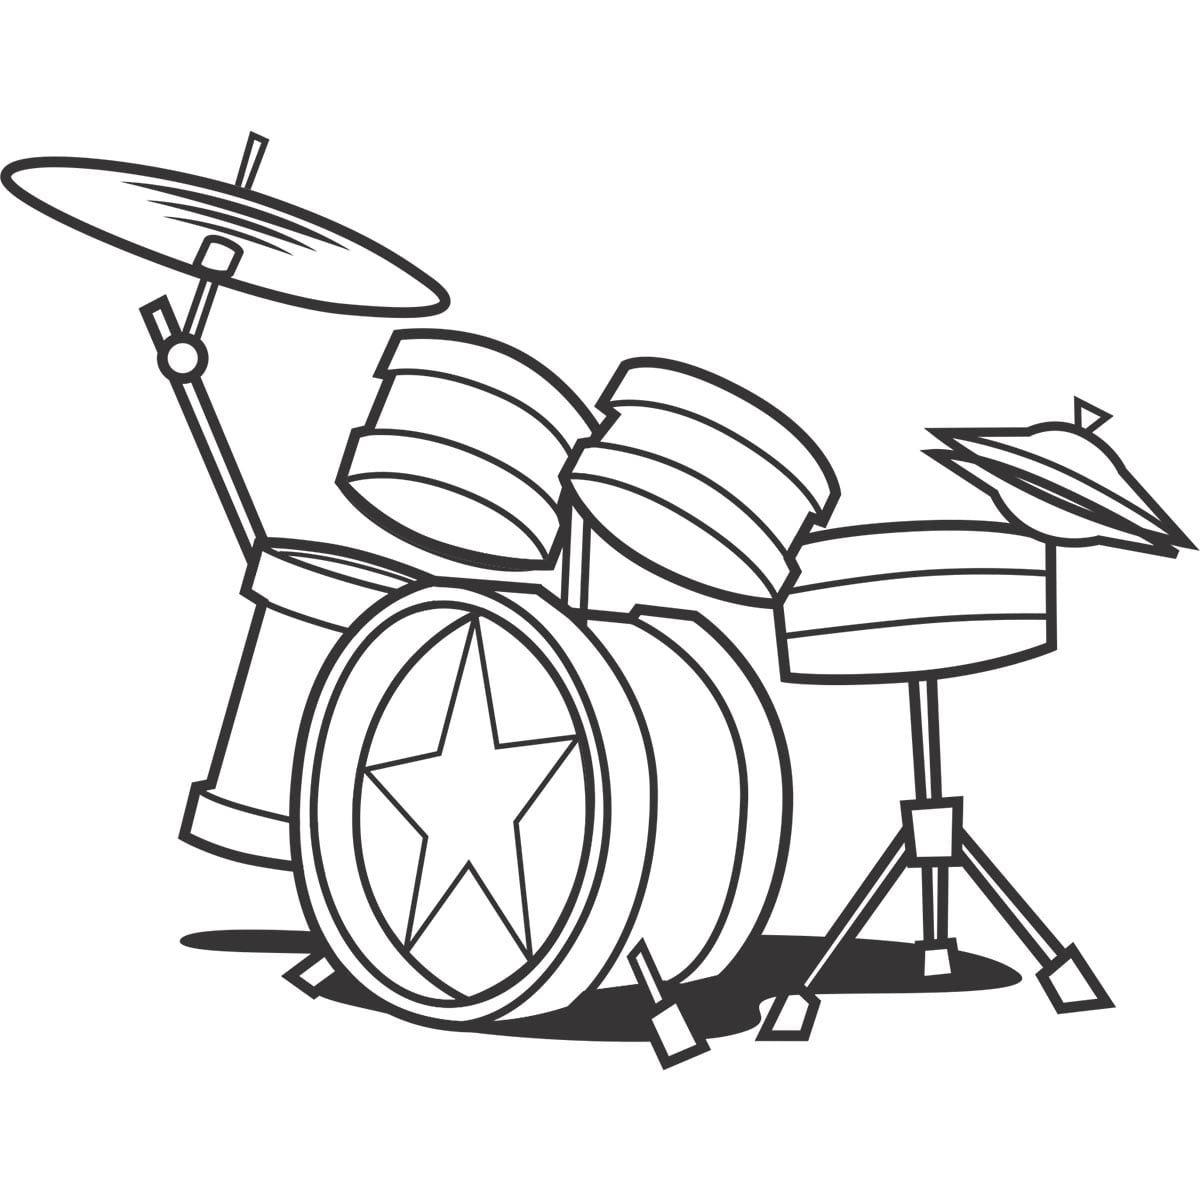 Sticker perete Drums 1